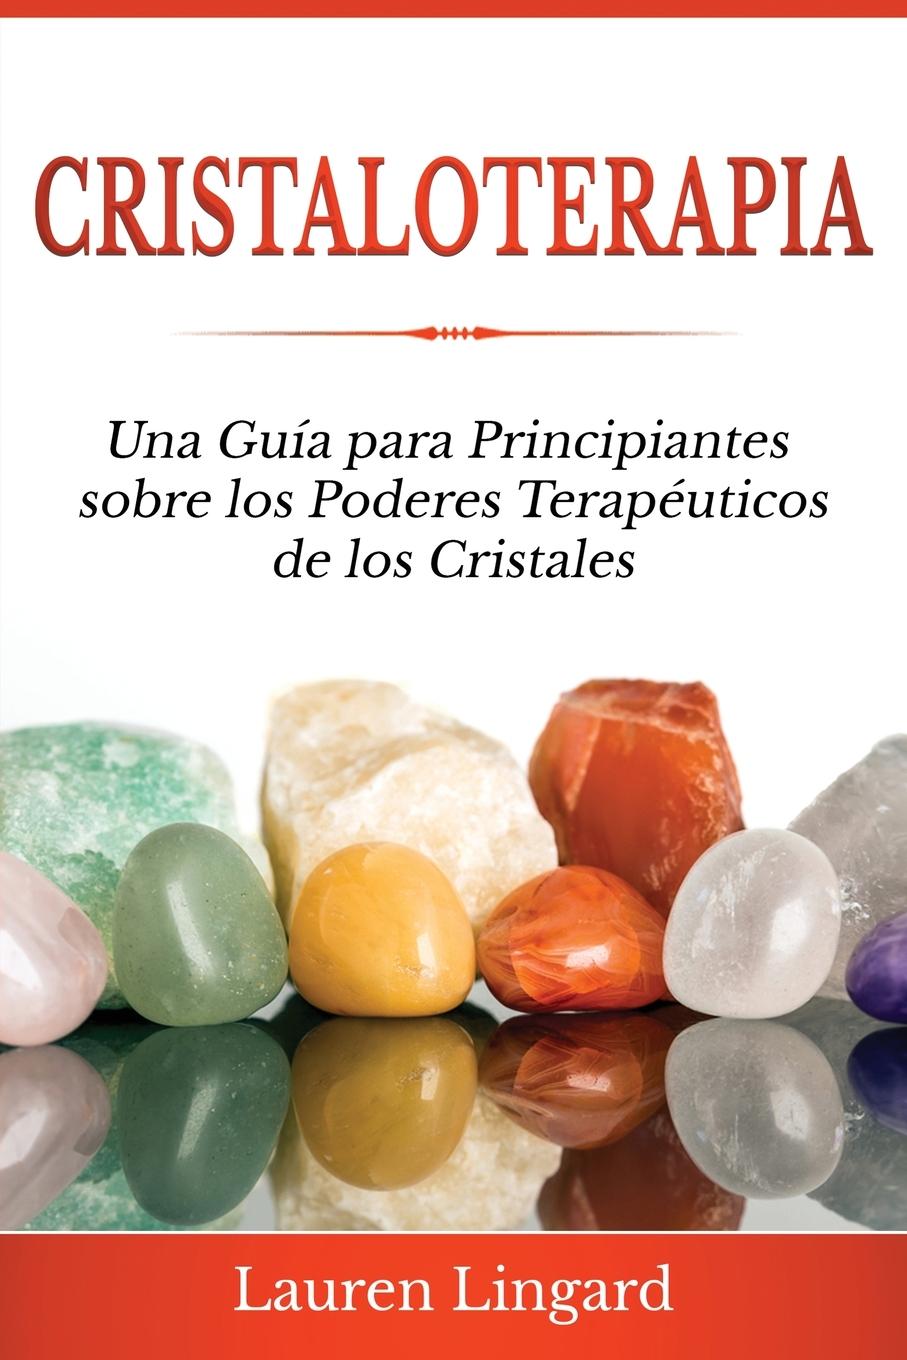 Book Cristaloterapia 